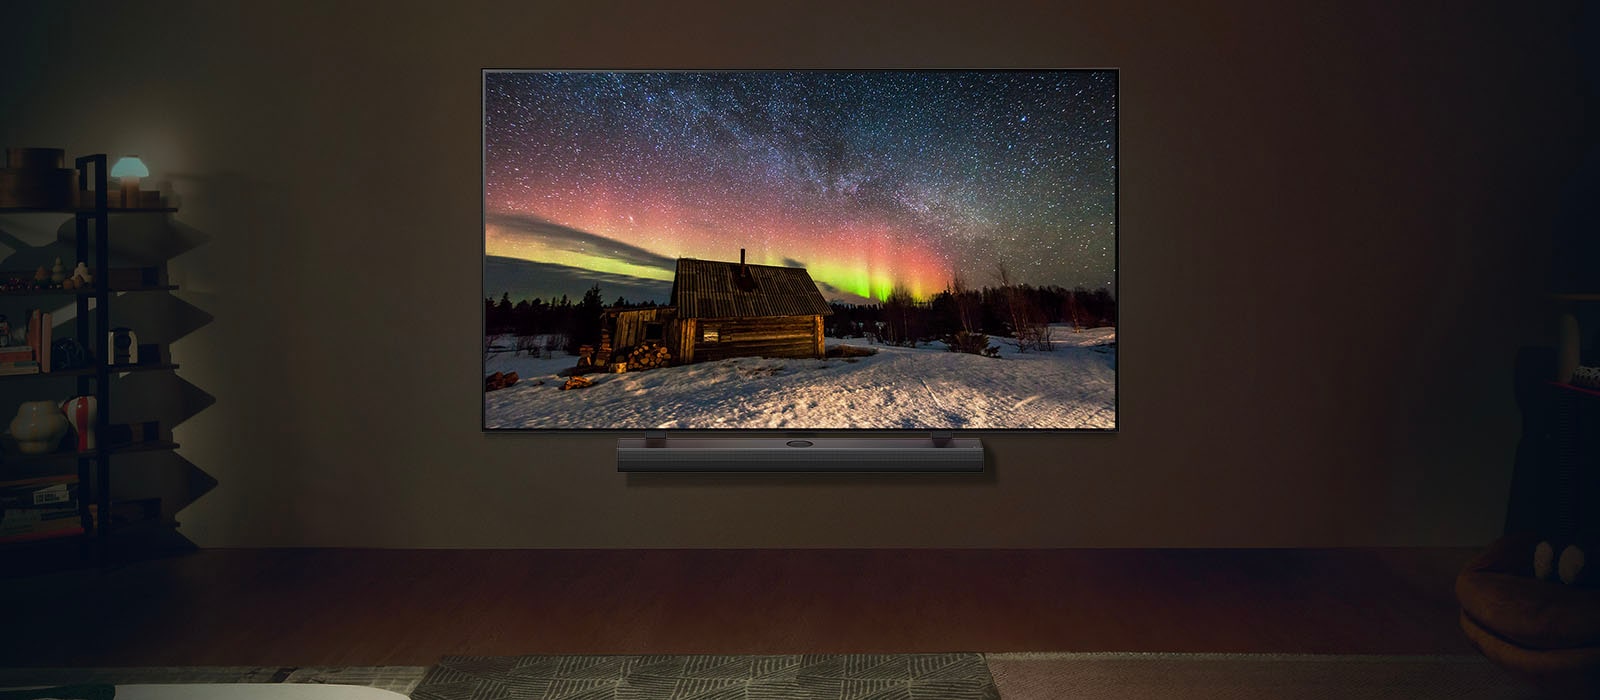 LG TV a LG Soundbar v moderním obývacím prostoru v noci. Obraz polární záře se na obrazovce zobrazuje s ideální úrovní jasu.